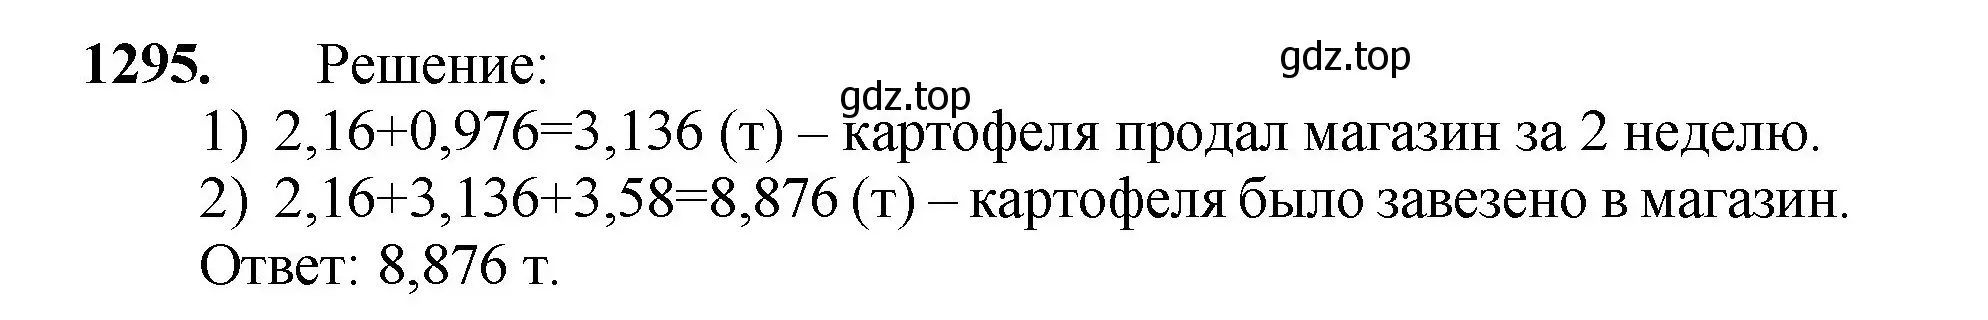 Решение номер 1295 (страница 286) гдз по математике 5 класс Мерзляк, Полонский, учебник